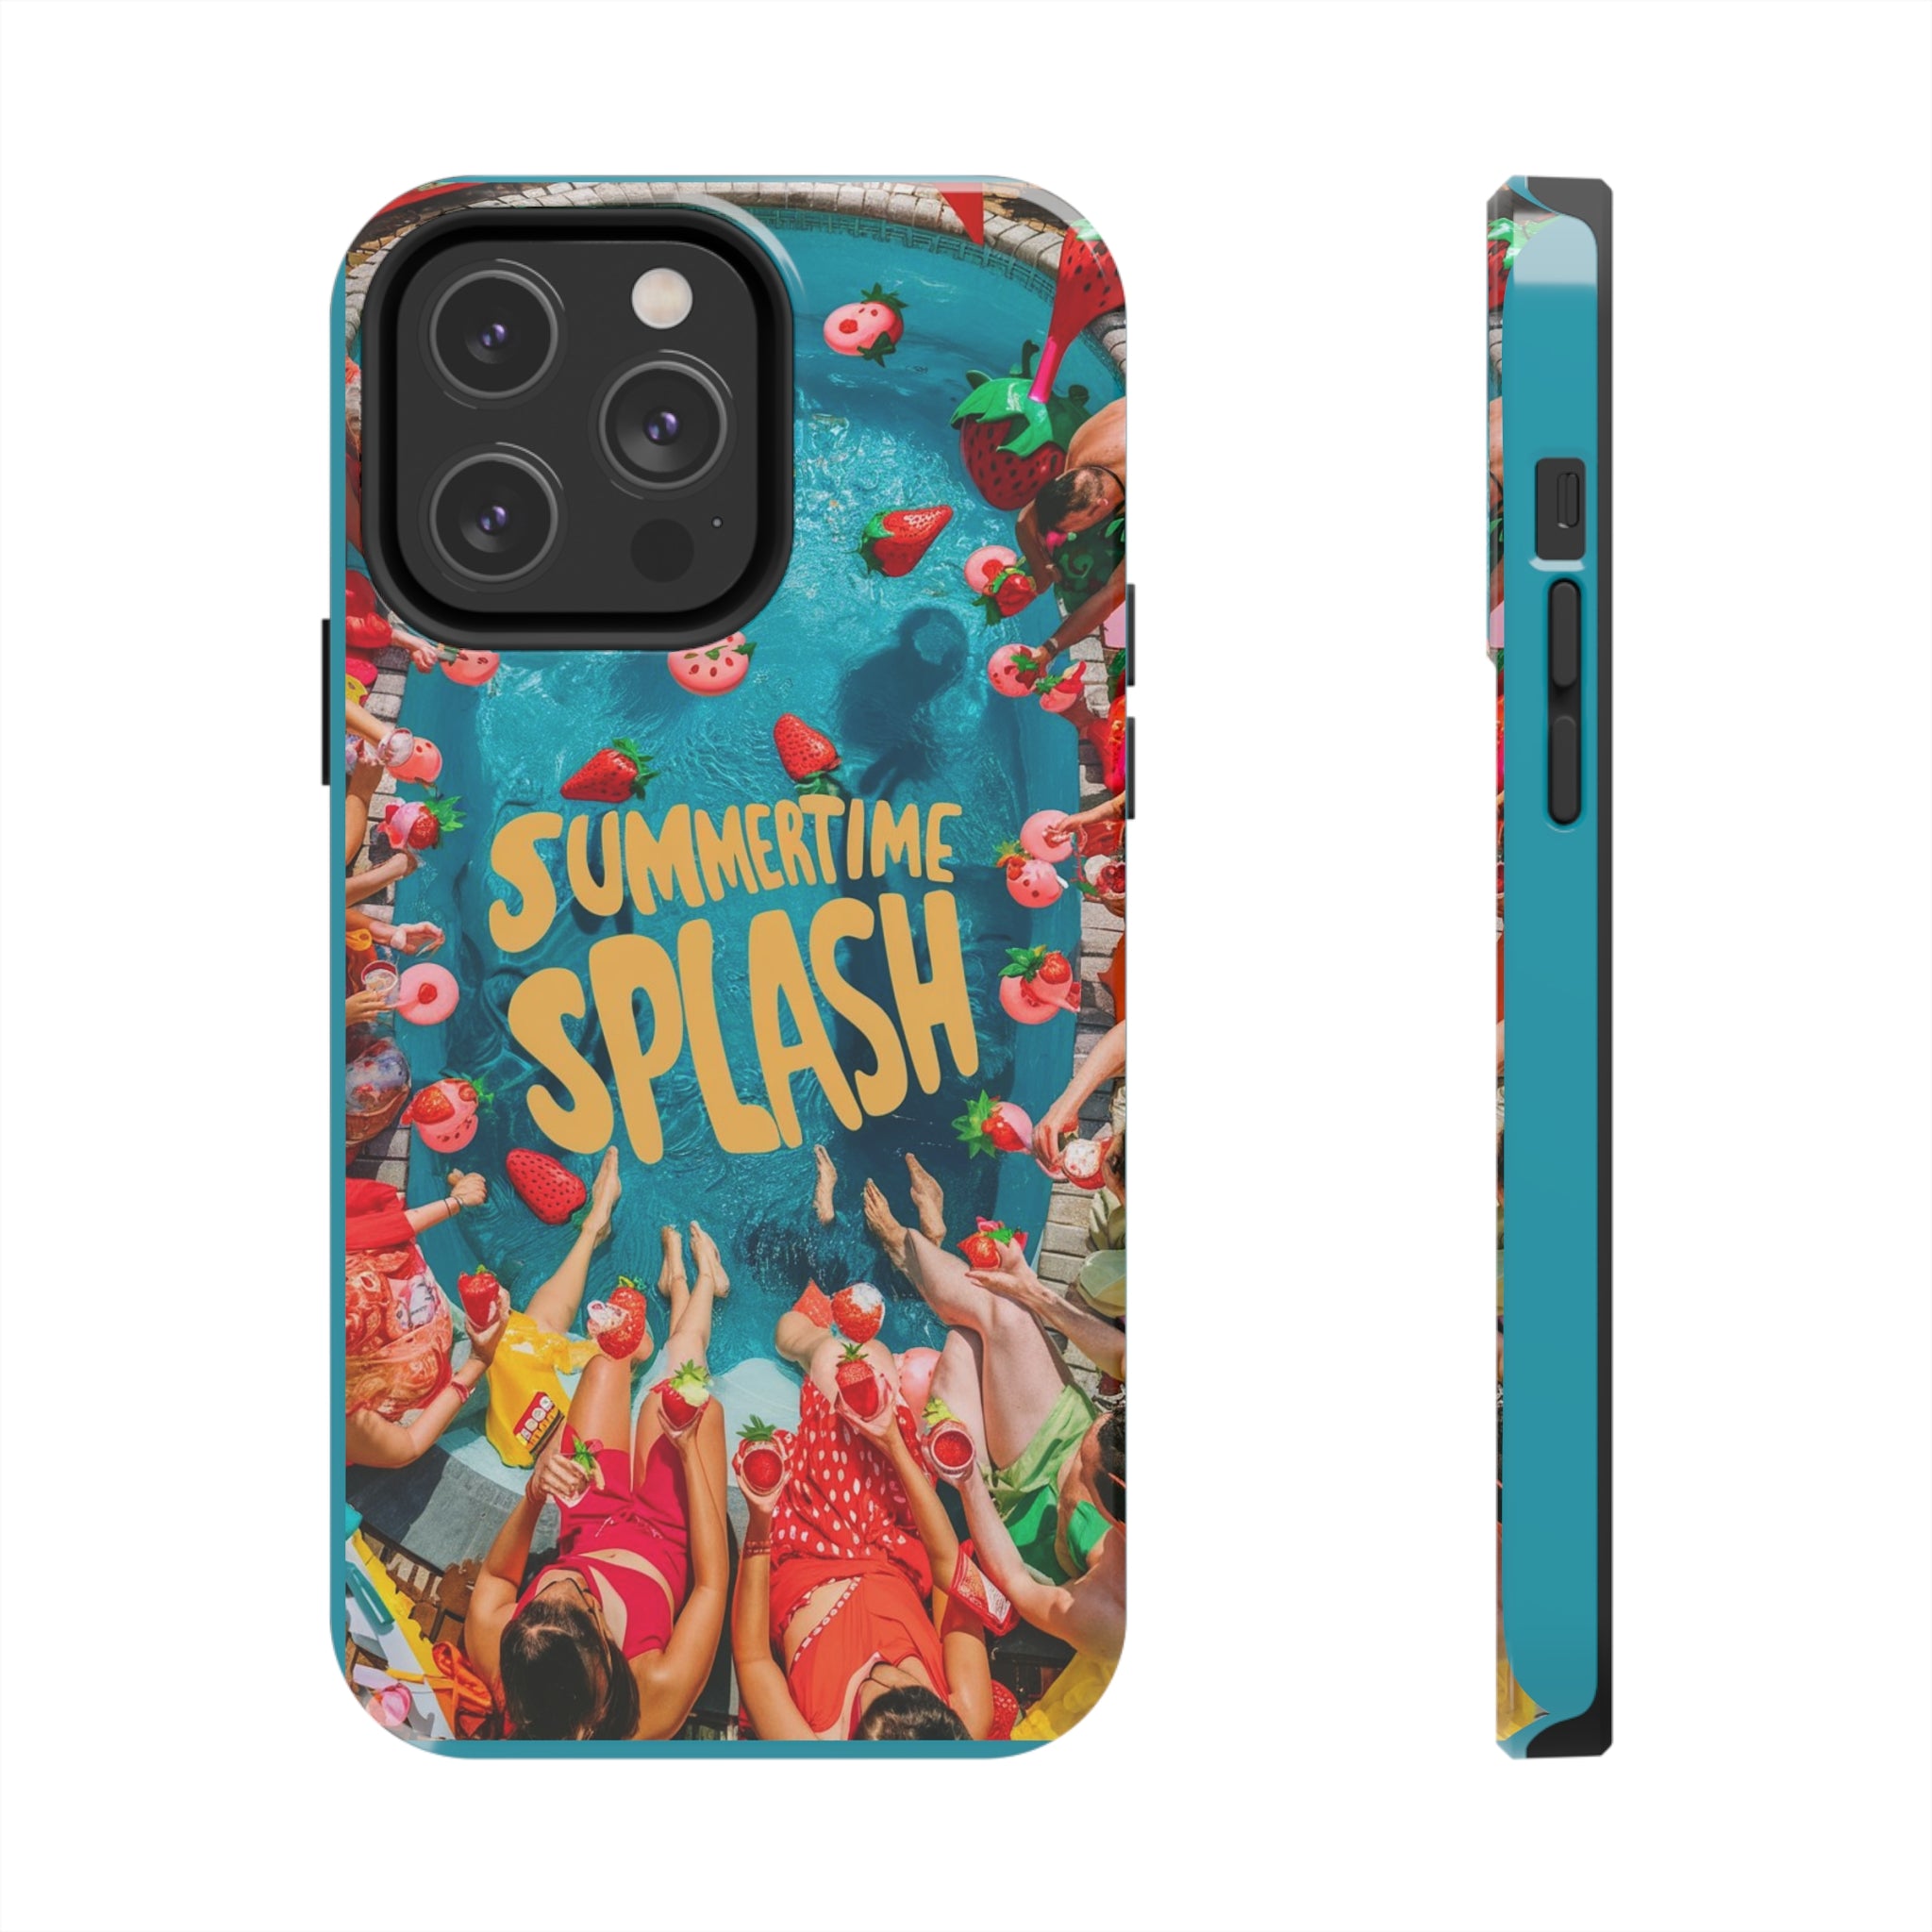 Summertime Splash - Tough Phone Cases